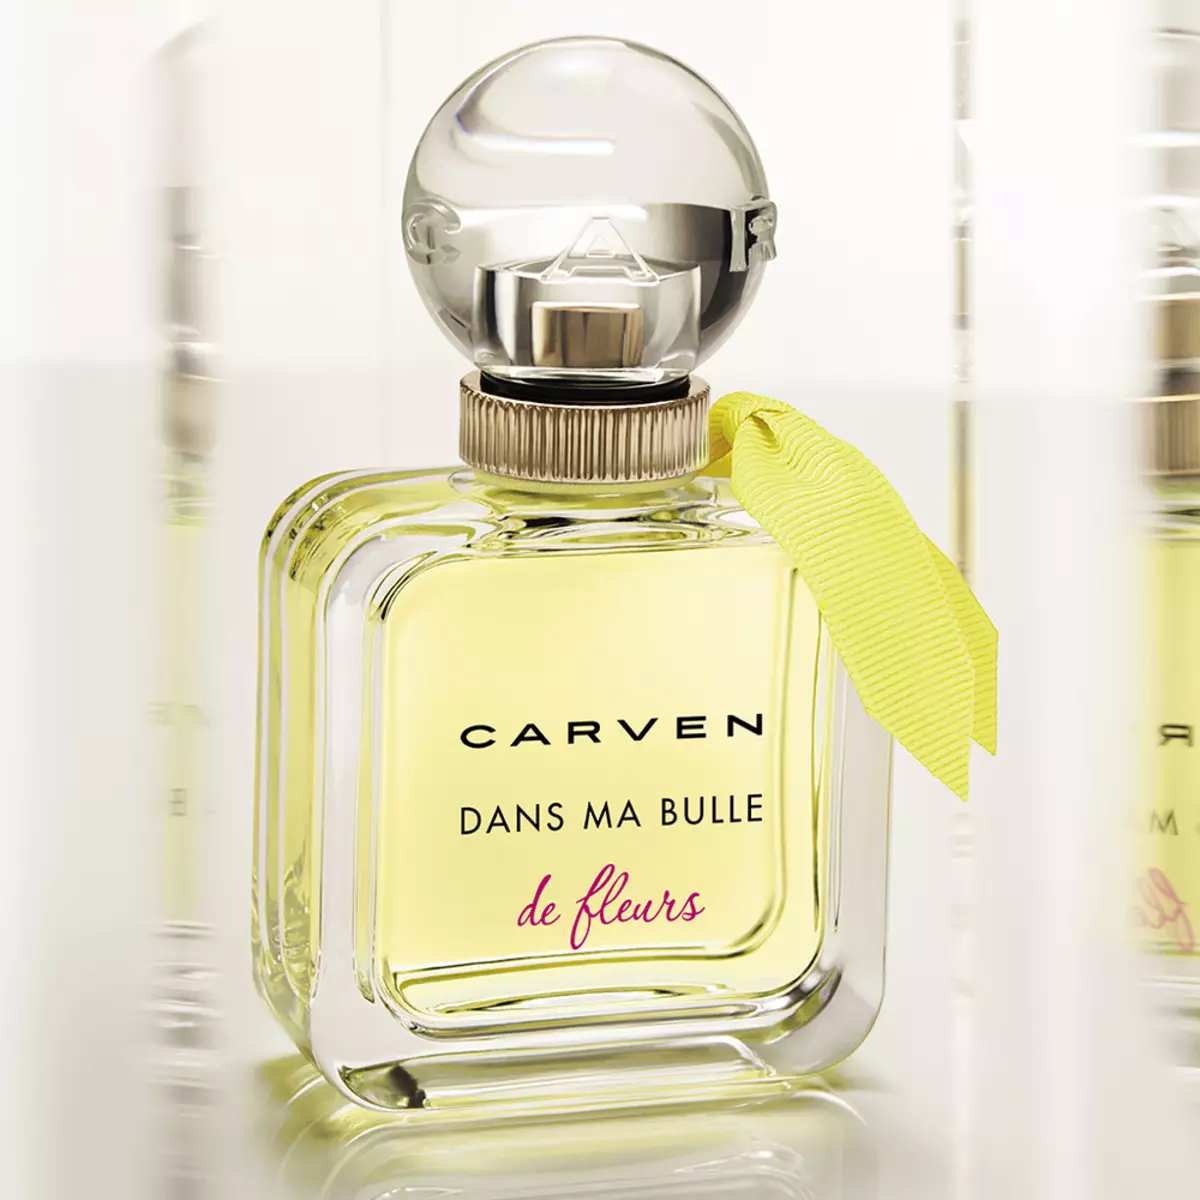 Parfuum Carven: Women's Parfums Le Parfum, L'Eau de toilette toilette en Dans Ma Bulle, Perfumerie Water vir Mans 25267_9